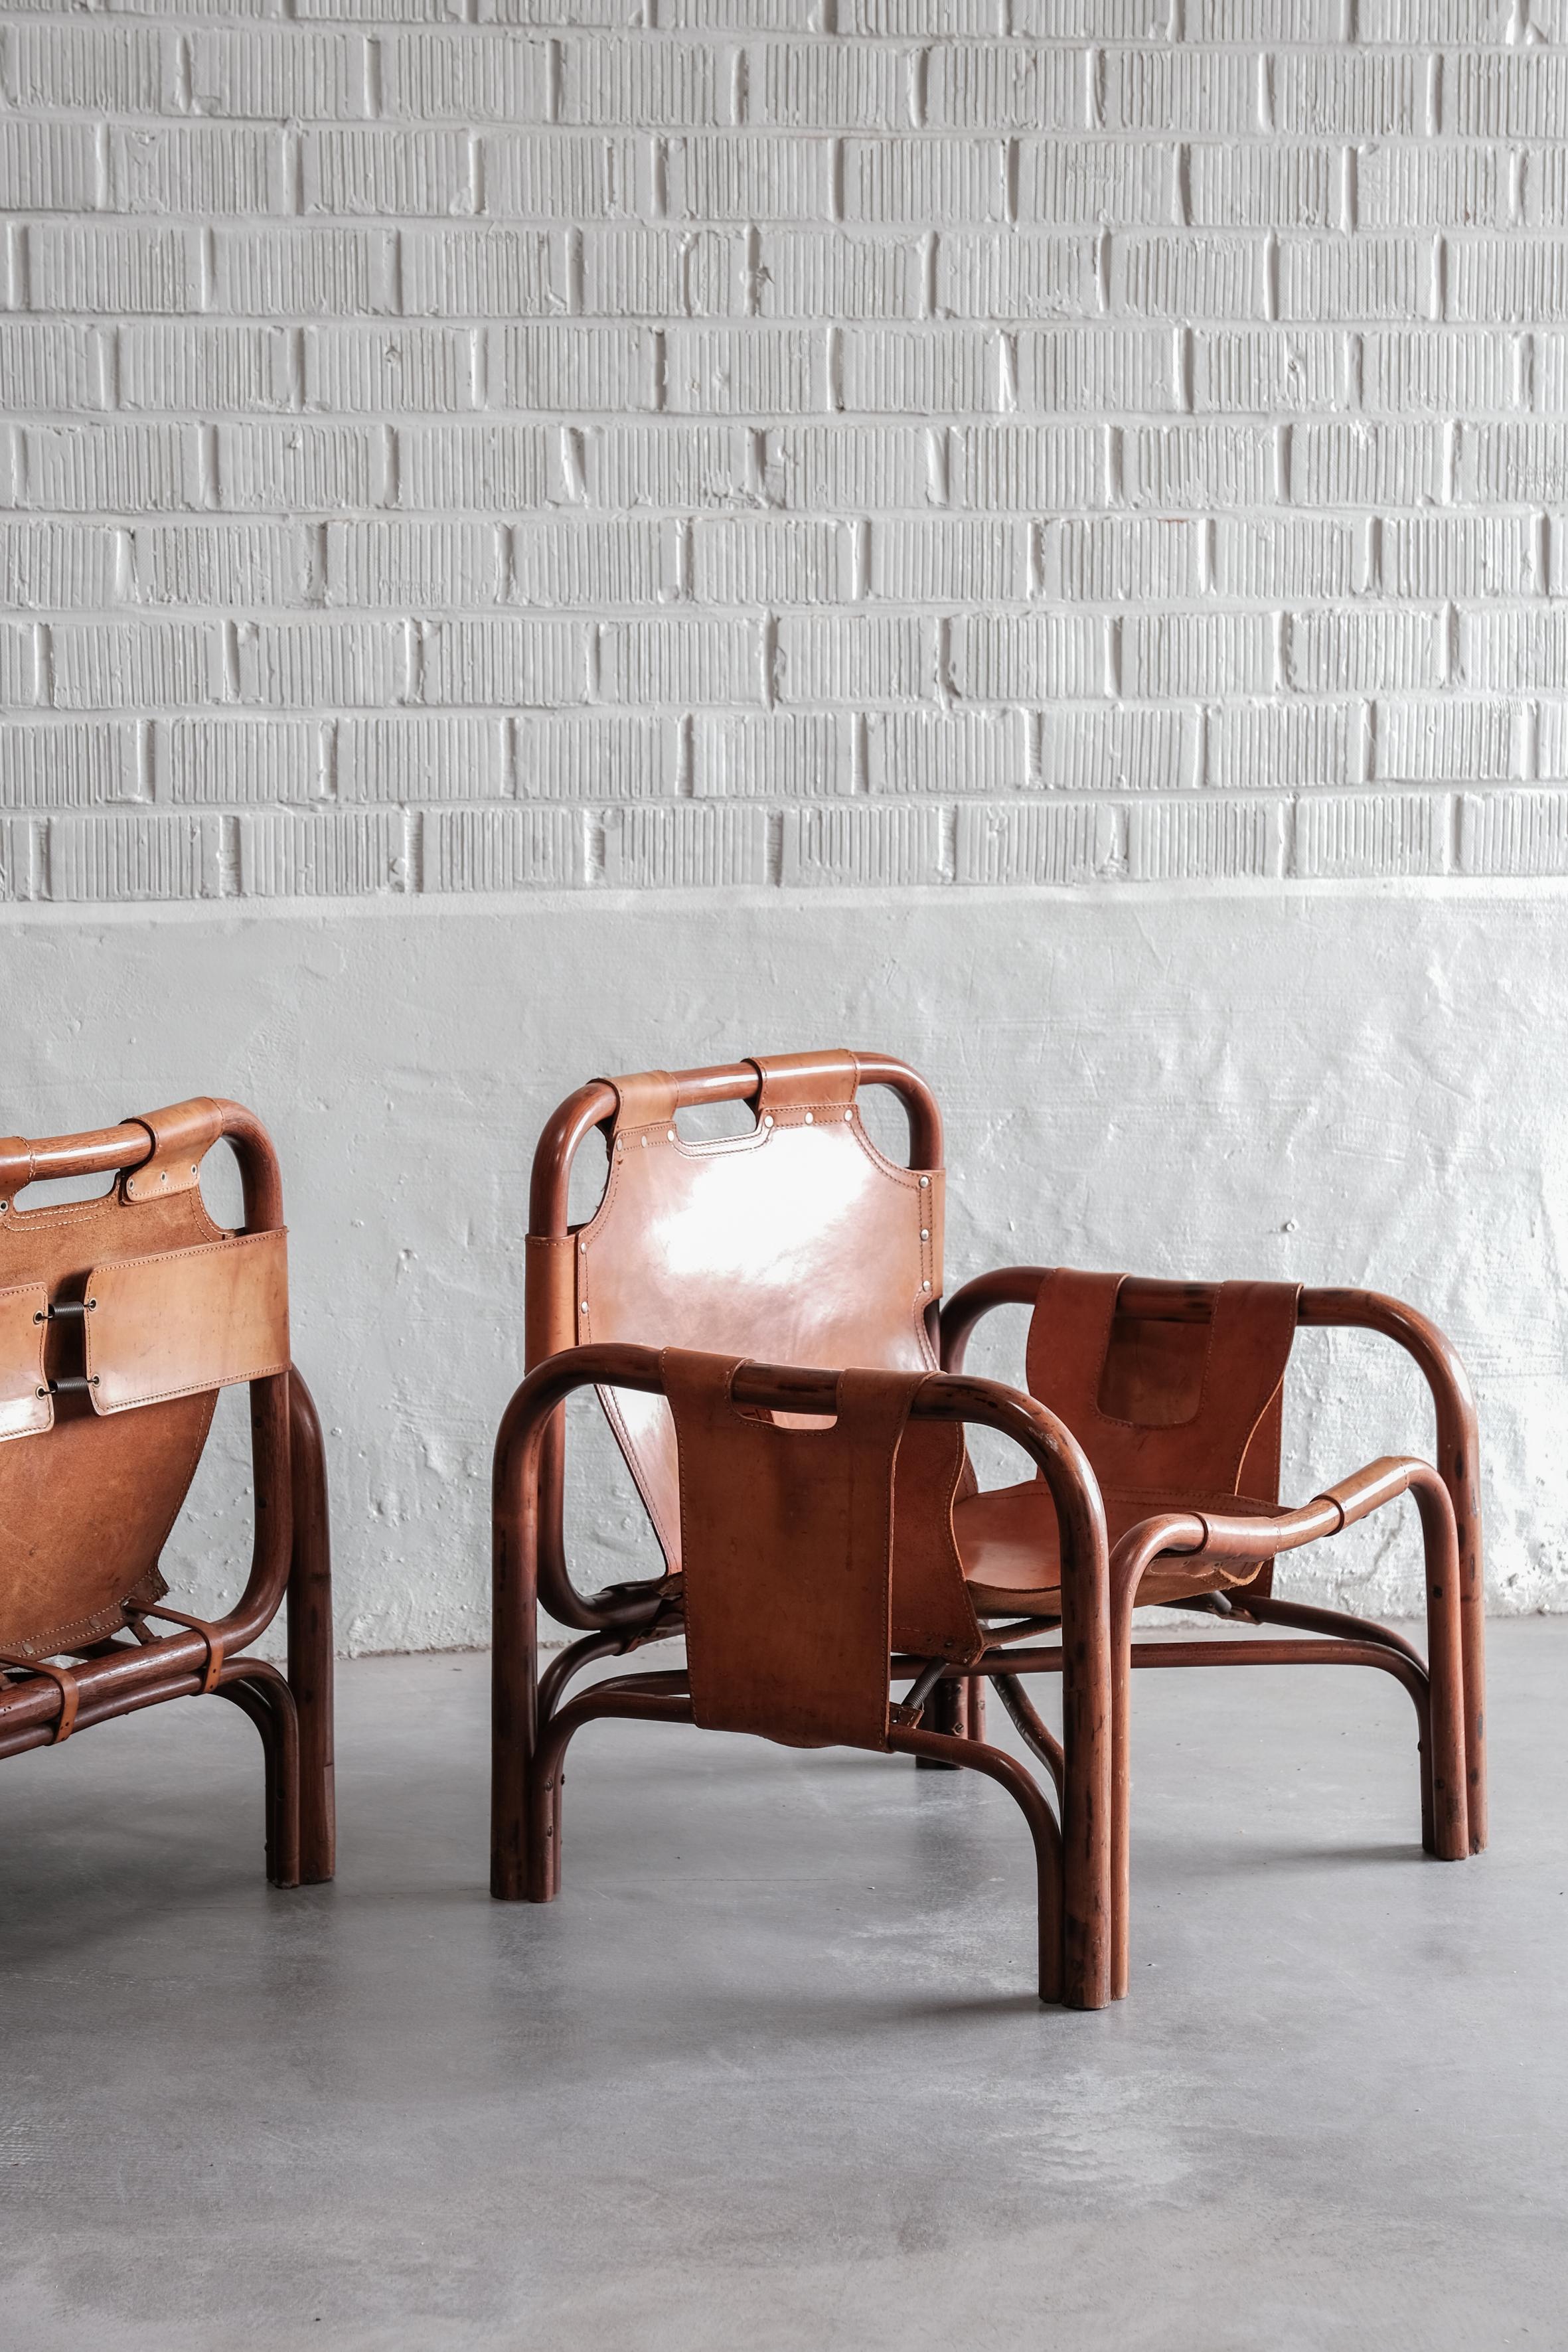 Atemberaubendes Paar aus Bambus und Leder, entworfen von Tito Agnoli in den 60er Jahren. 

Die Stühle sind in gutem Vintage-Zustand mit einigen kleinen Flecken und Patina auf dem Leder. 